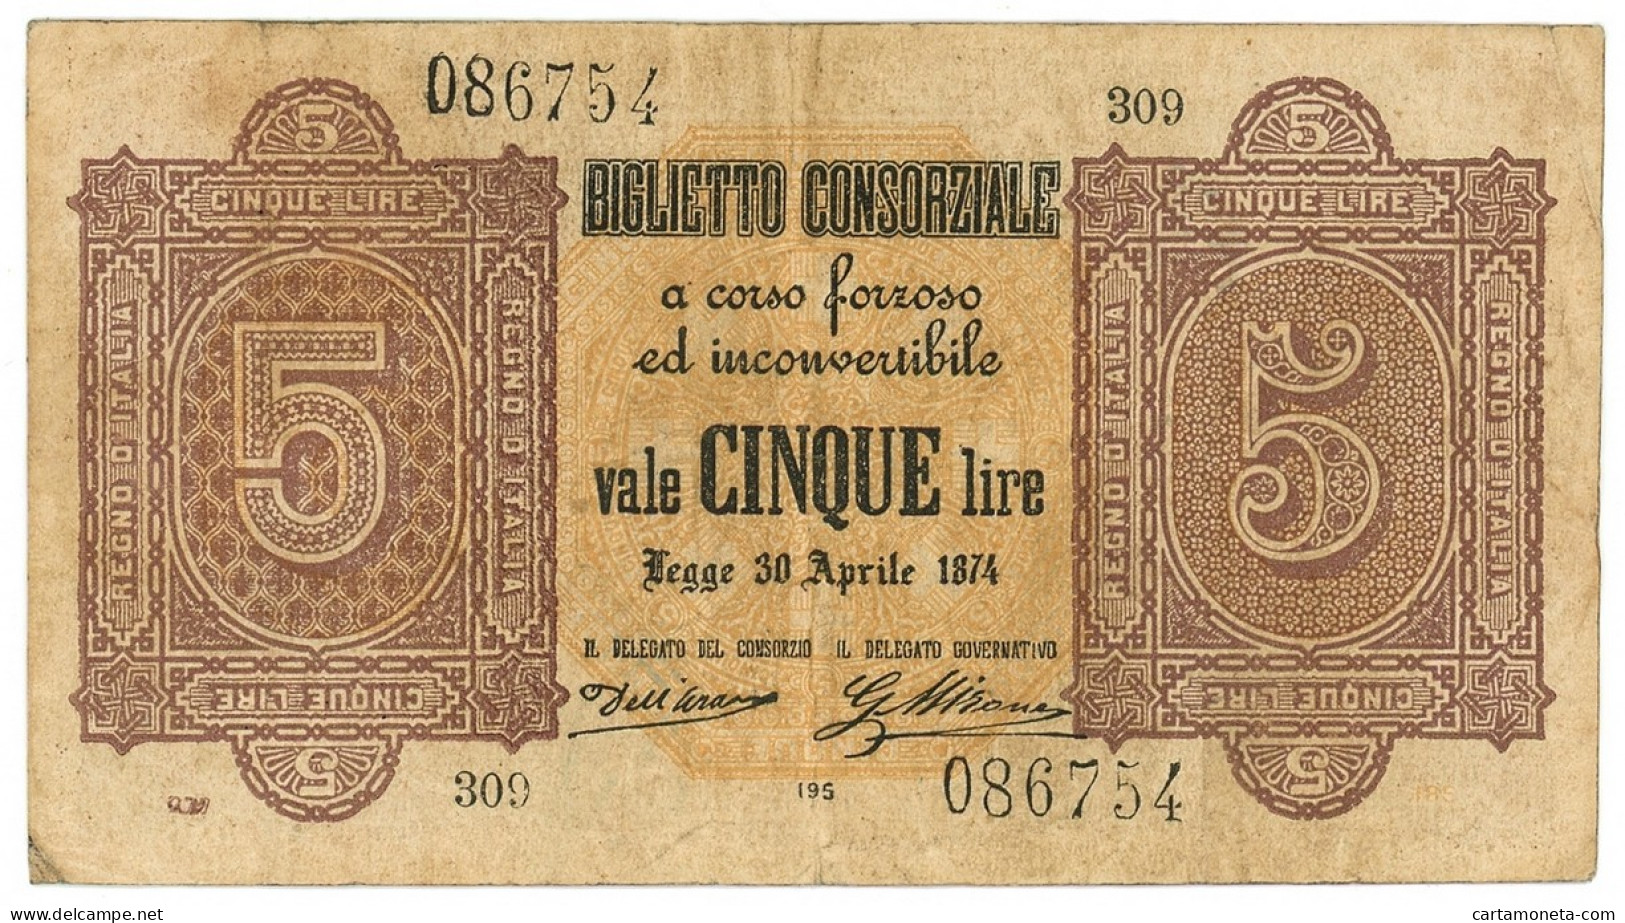 5 LIRE BIGLIETTO CONSORZIALE REGNO D'ITALIA 30/04/1874 BB/BB+ - Biglietti Consorziale